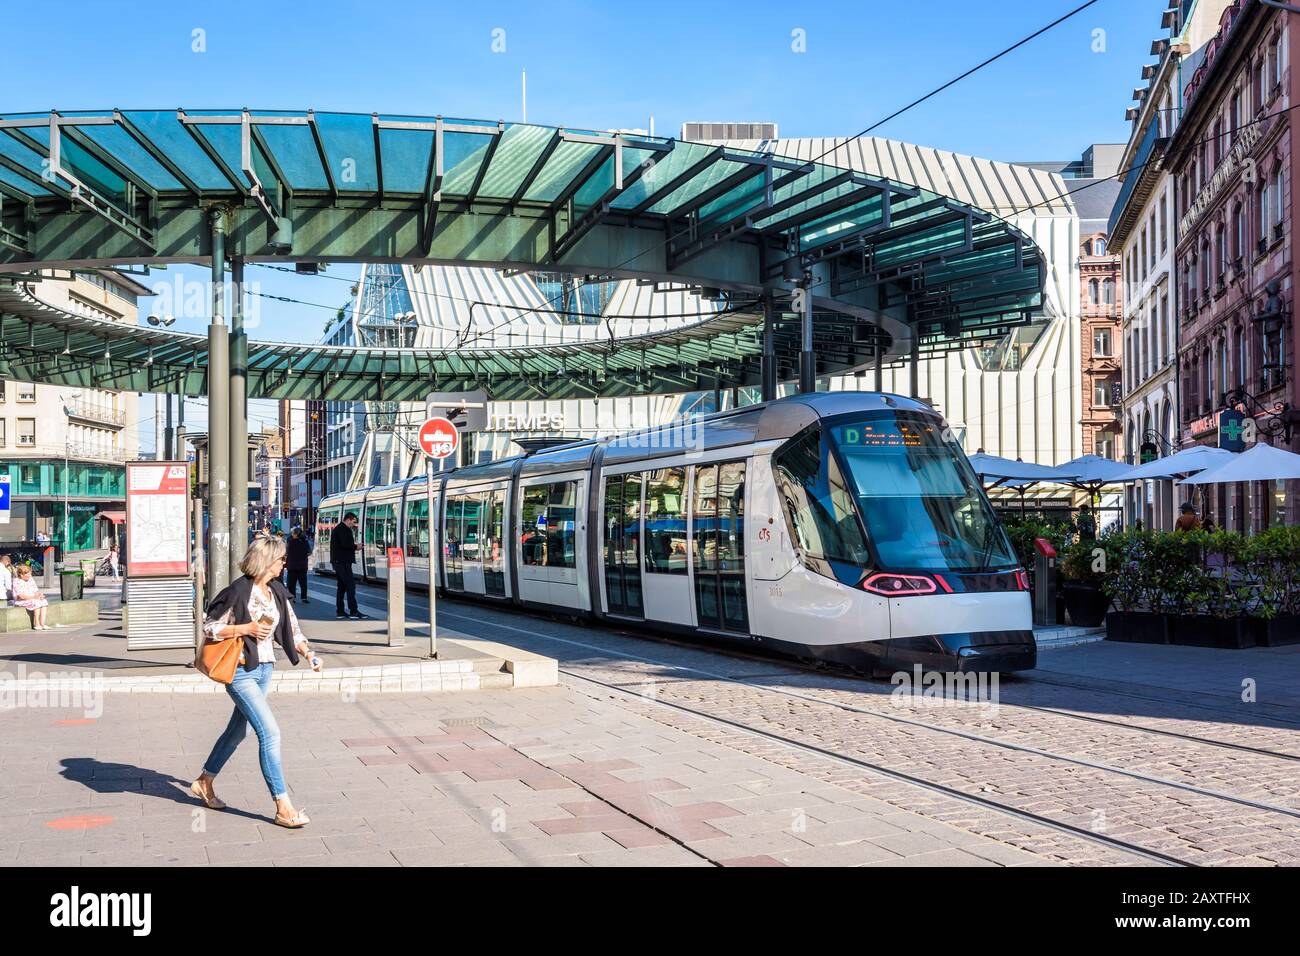 Hay un tranvía en la estación de tranvía Homme de Fer, coronada por una rotonda de vidrio, la estación de tranvía más concurrida de Estrasburgo, Francia. Foto de stock